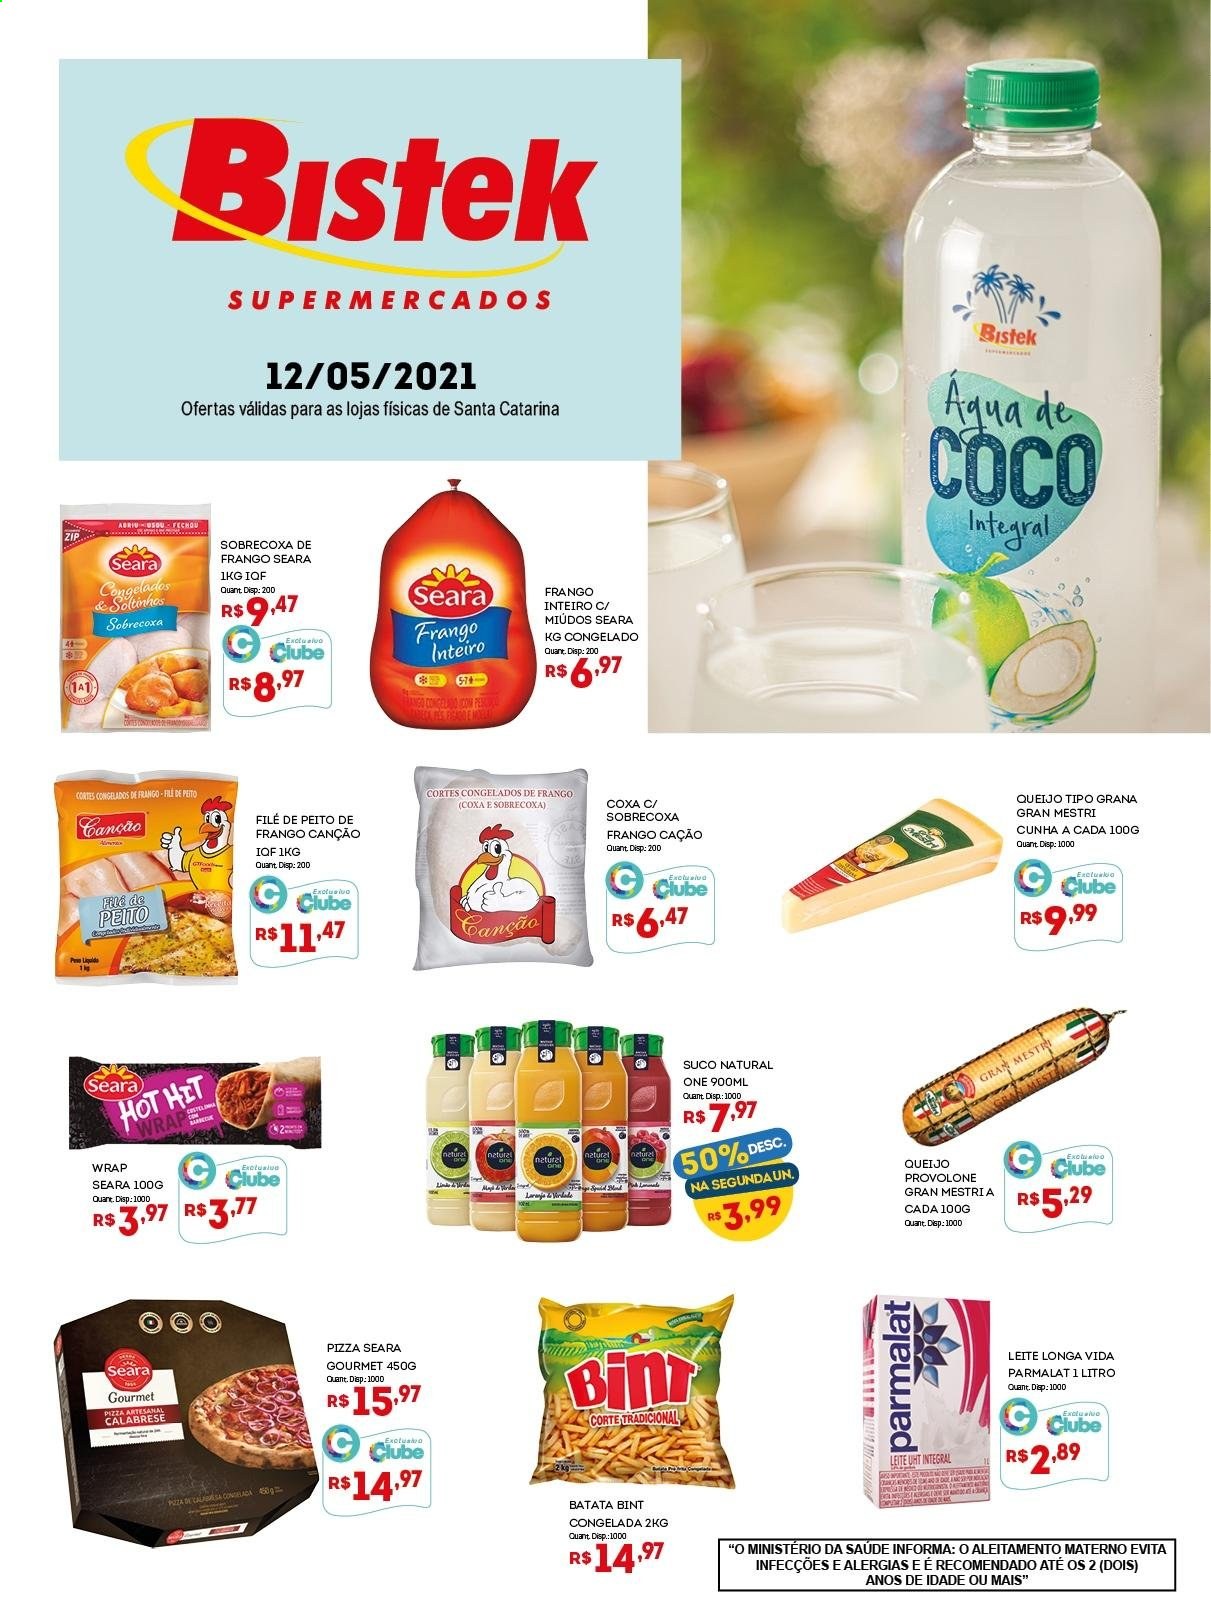 thumbnail - Folheto Bistek Supermercados - 12/05/2021 - 12/05/2021 - Produtos em promoção - batata, sobrecoxa, peito de frango, frango inteiro, pizza, queijo, provolone, leite, Longa vida, suco. Página 1.